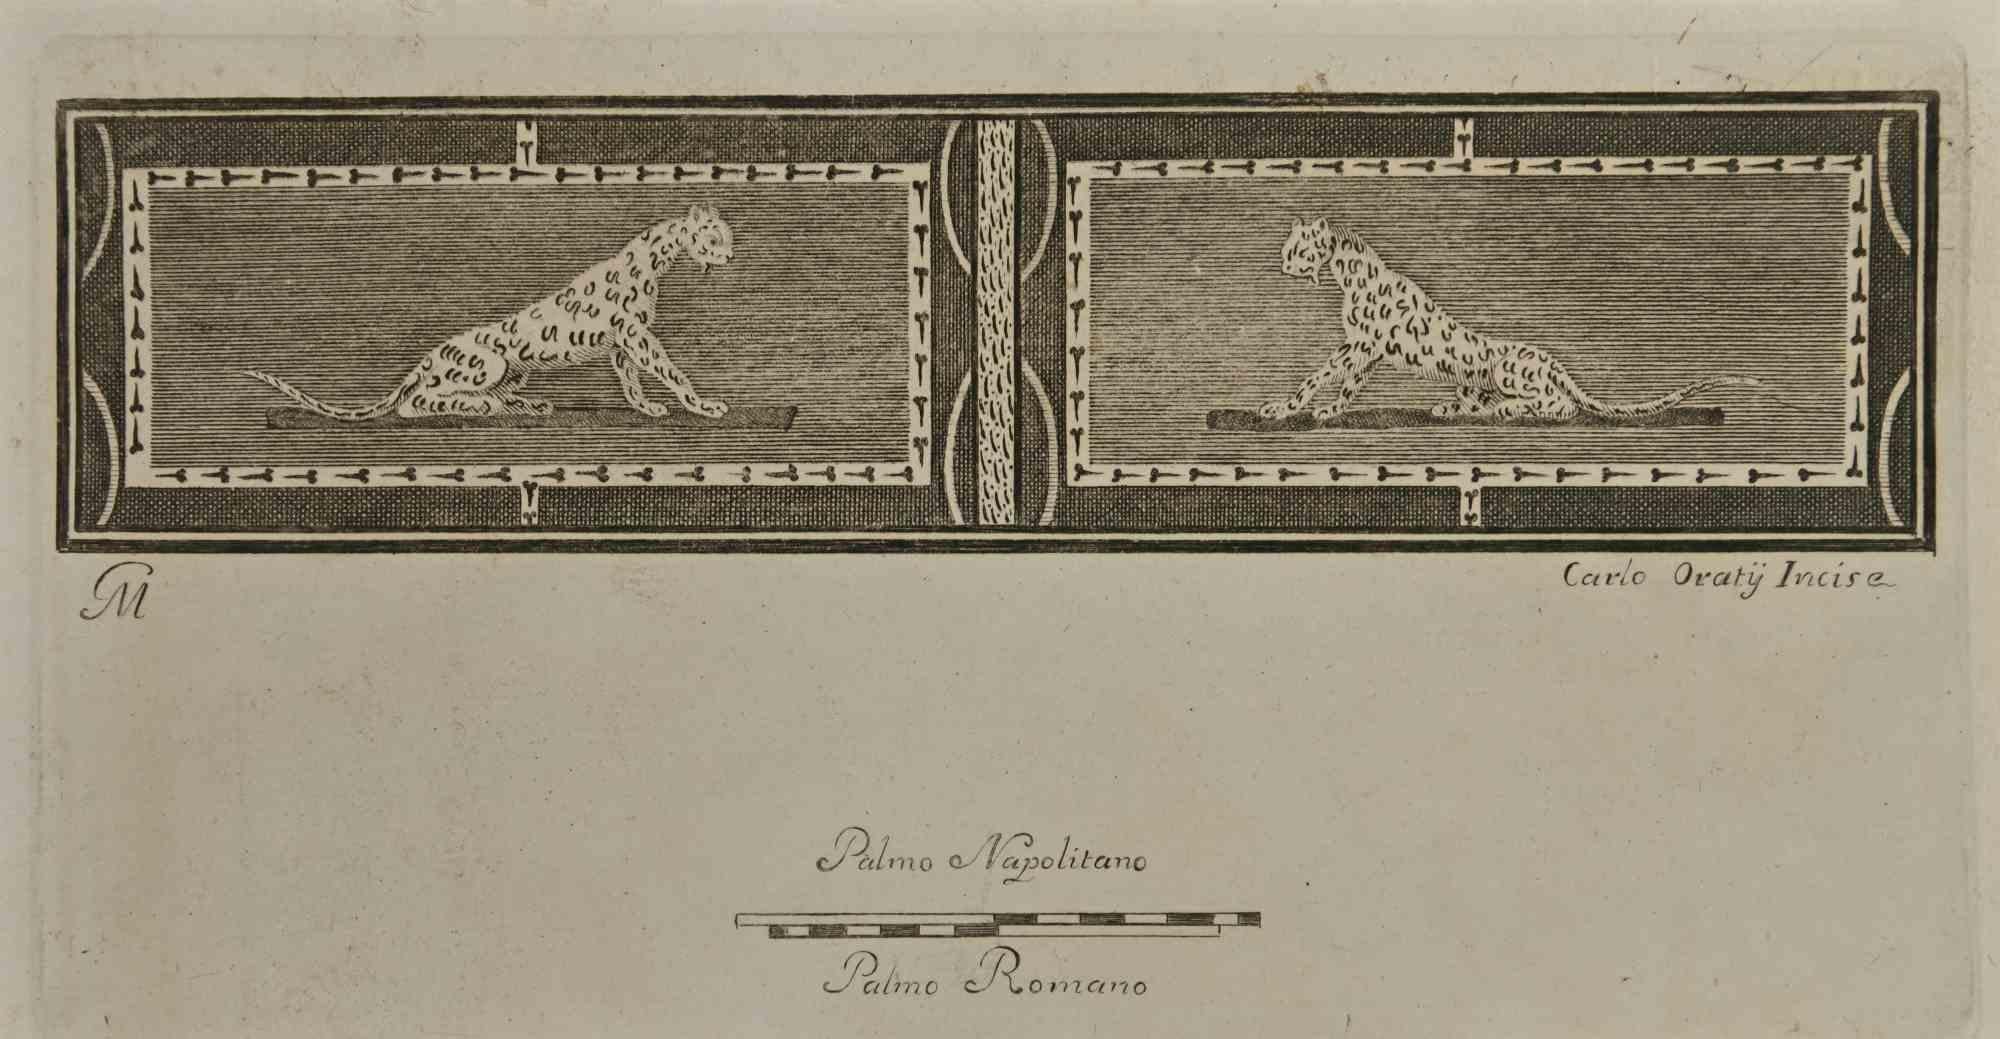 Das pompejanische Fresko Jaguar aus den "Altertümern von Herculaneum" ist eine Radierung auf Papier von Carlo Oraty aus dem 18. Jahrhundert.

Signiert auf der Platte.

Gute Bedingungen.

Die Radierung gehört zu der Druckserie "Antiquities of